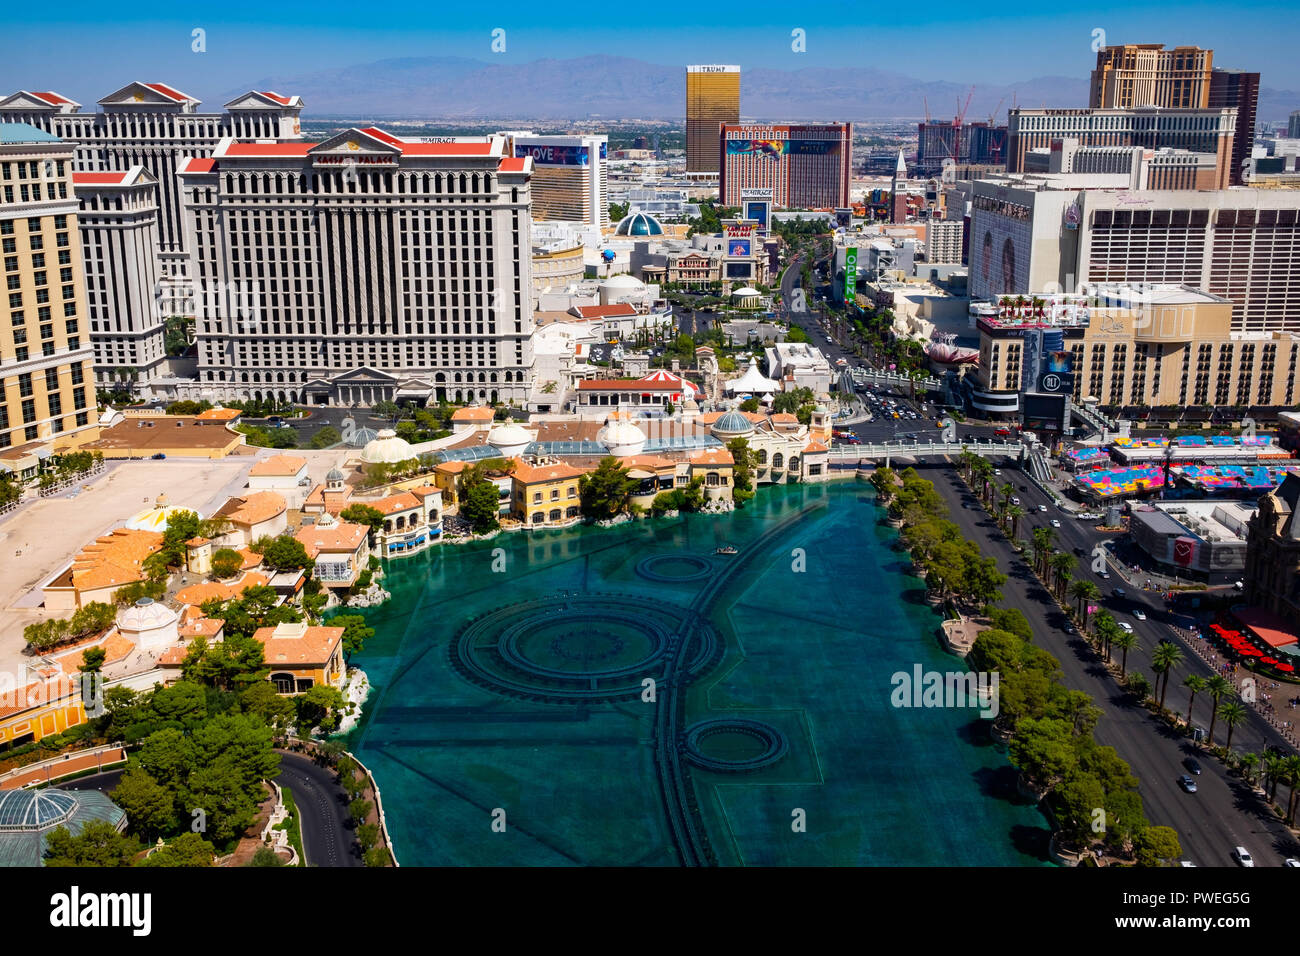 El horizonte de las Vegas con vistas a la fuente del Bellagio Hotel Foto de stock